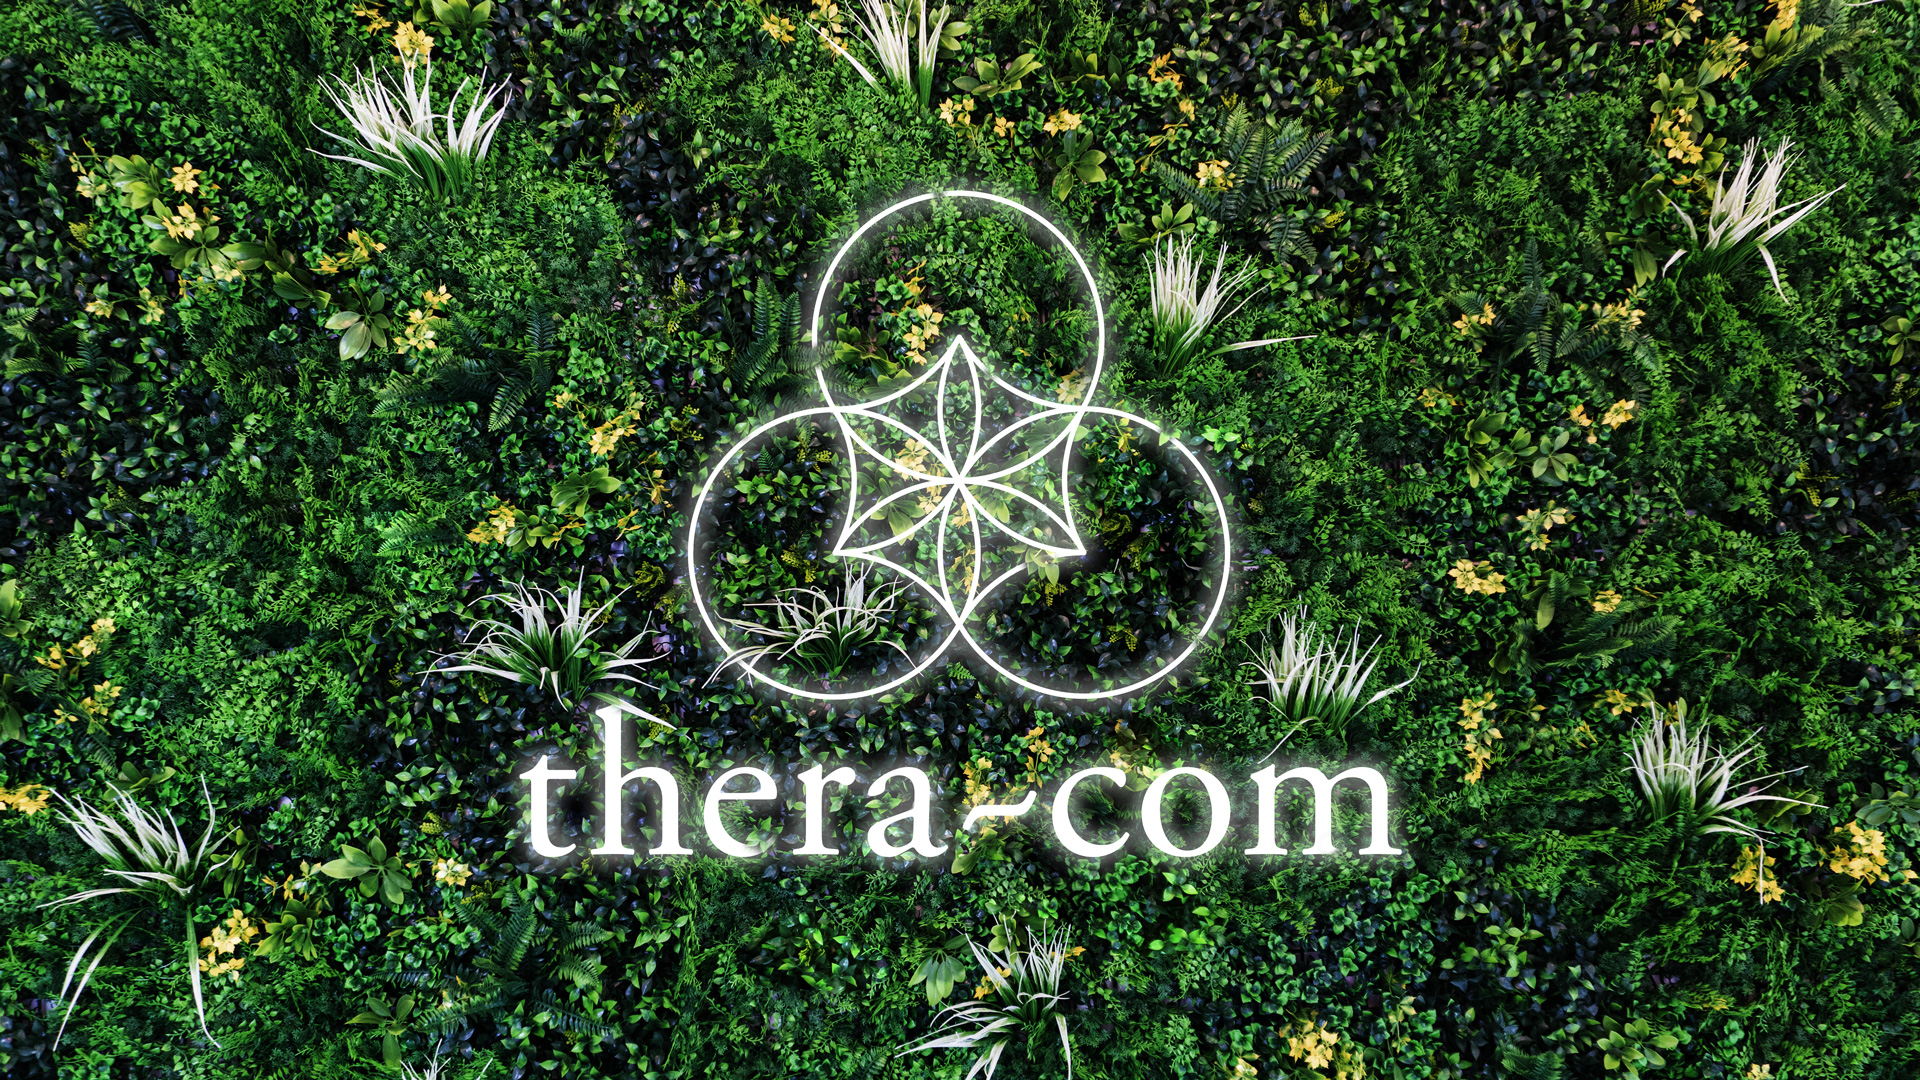 thera-com Logo leuchtet aus Pflanzen heraus